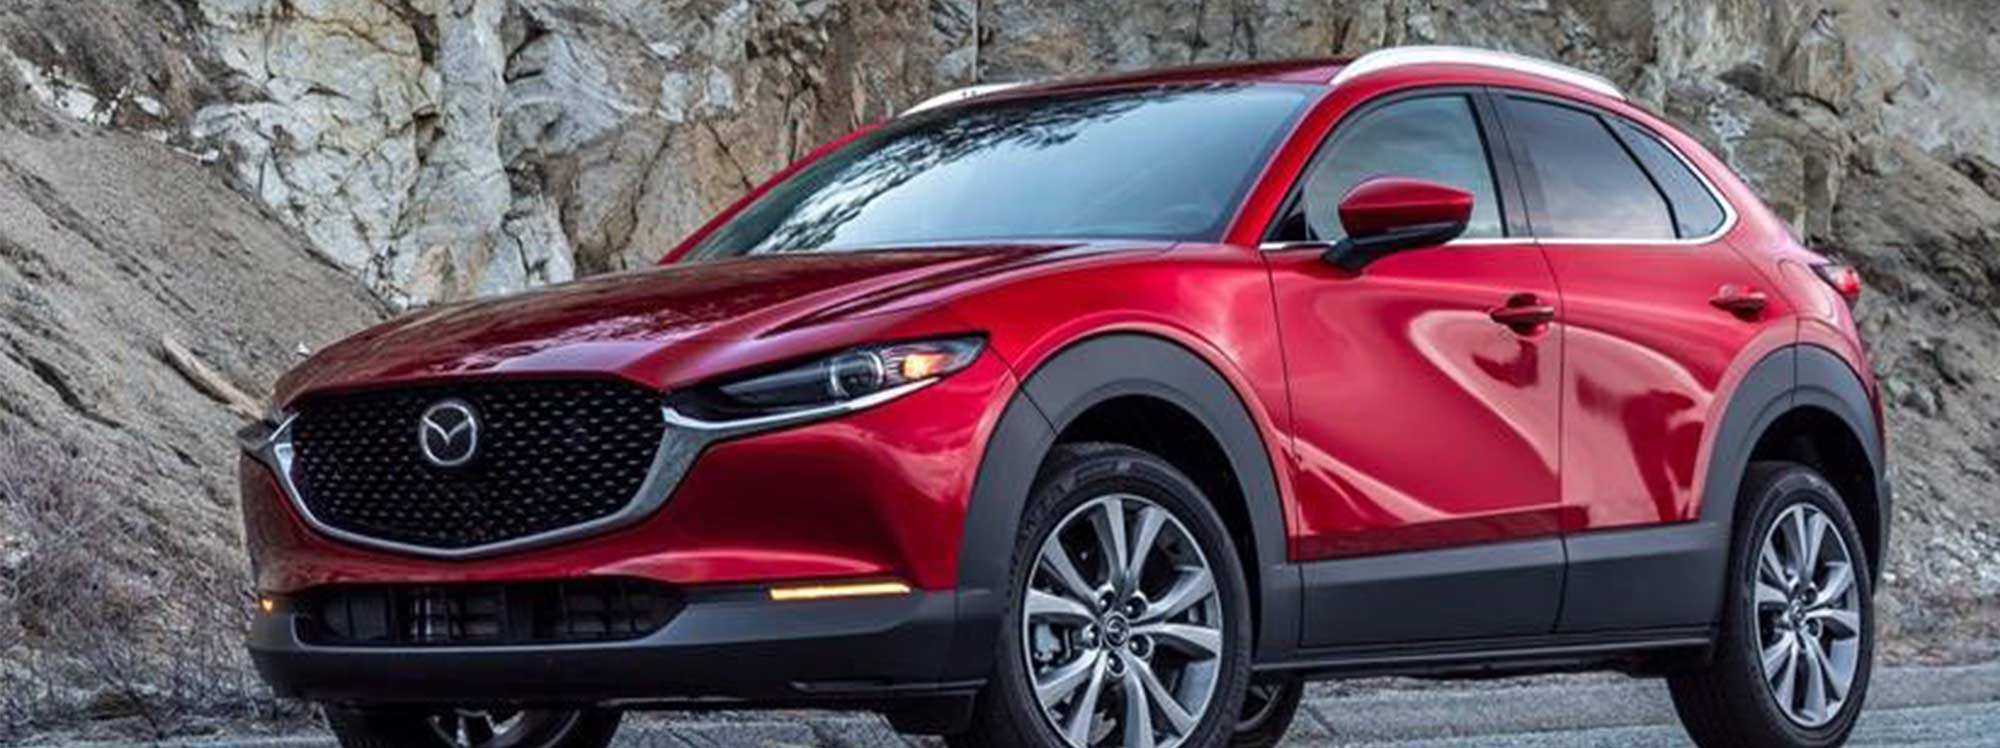 Aquí los detalles de la Mazda CX-30 2022